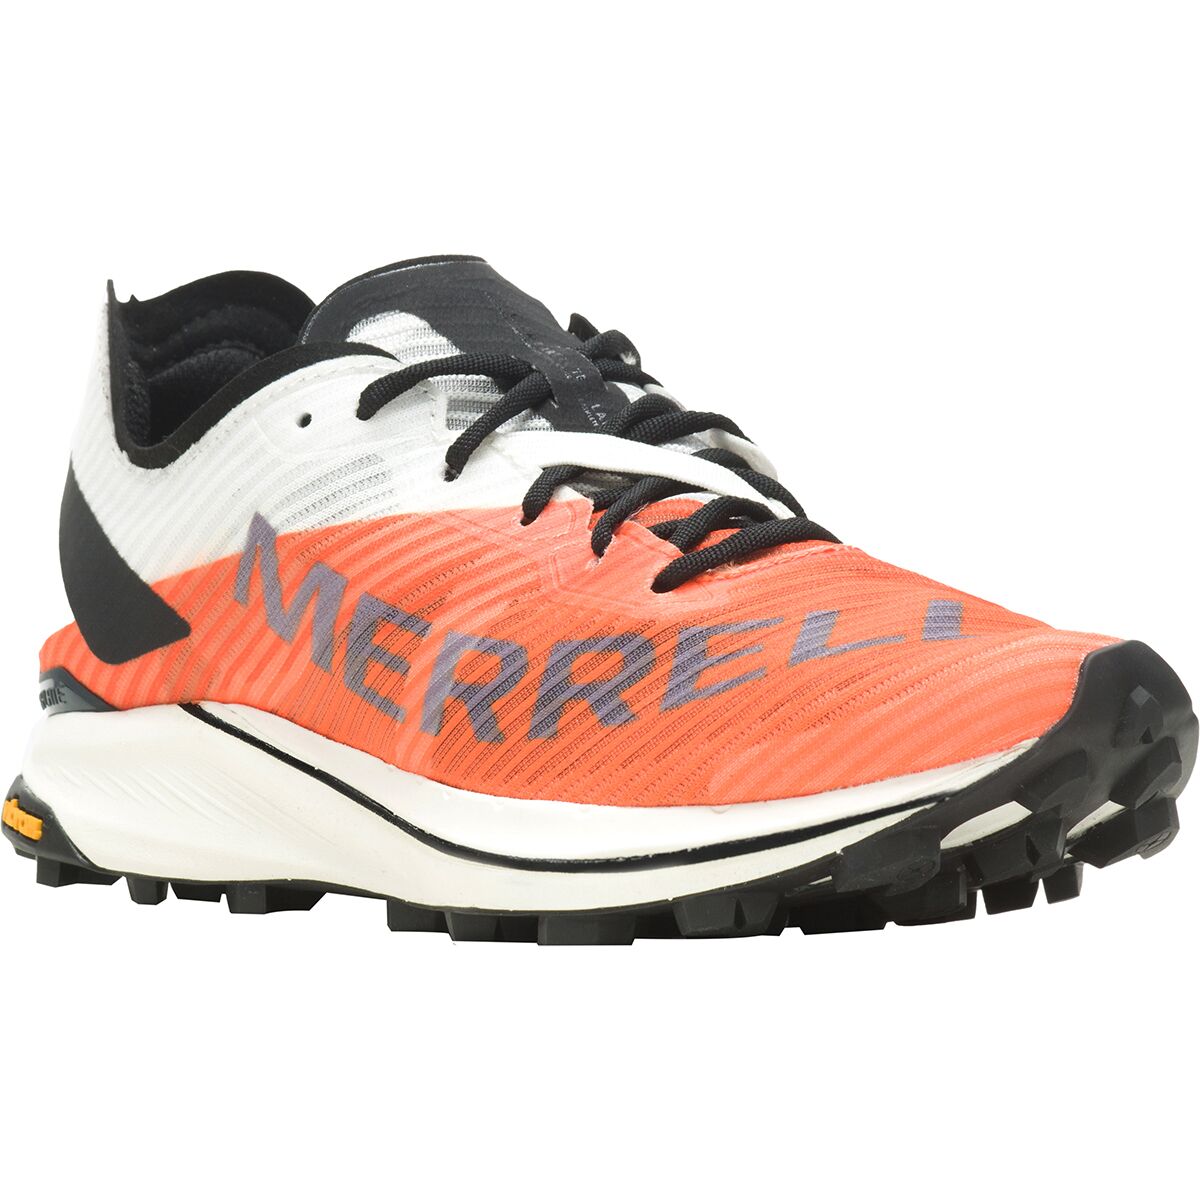 Merrell MTL Skyfire 2 Trail Running Shoe - Women's - Footwear